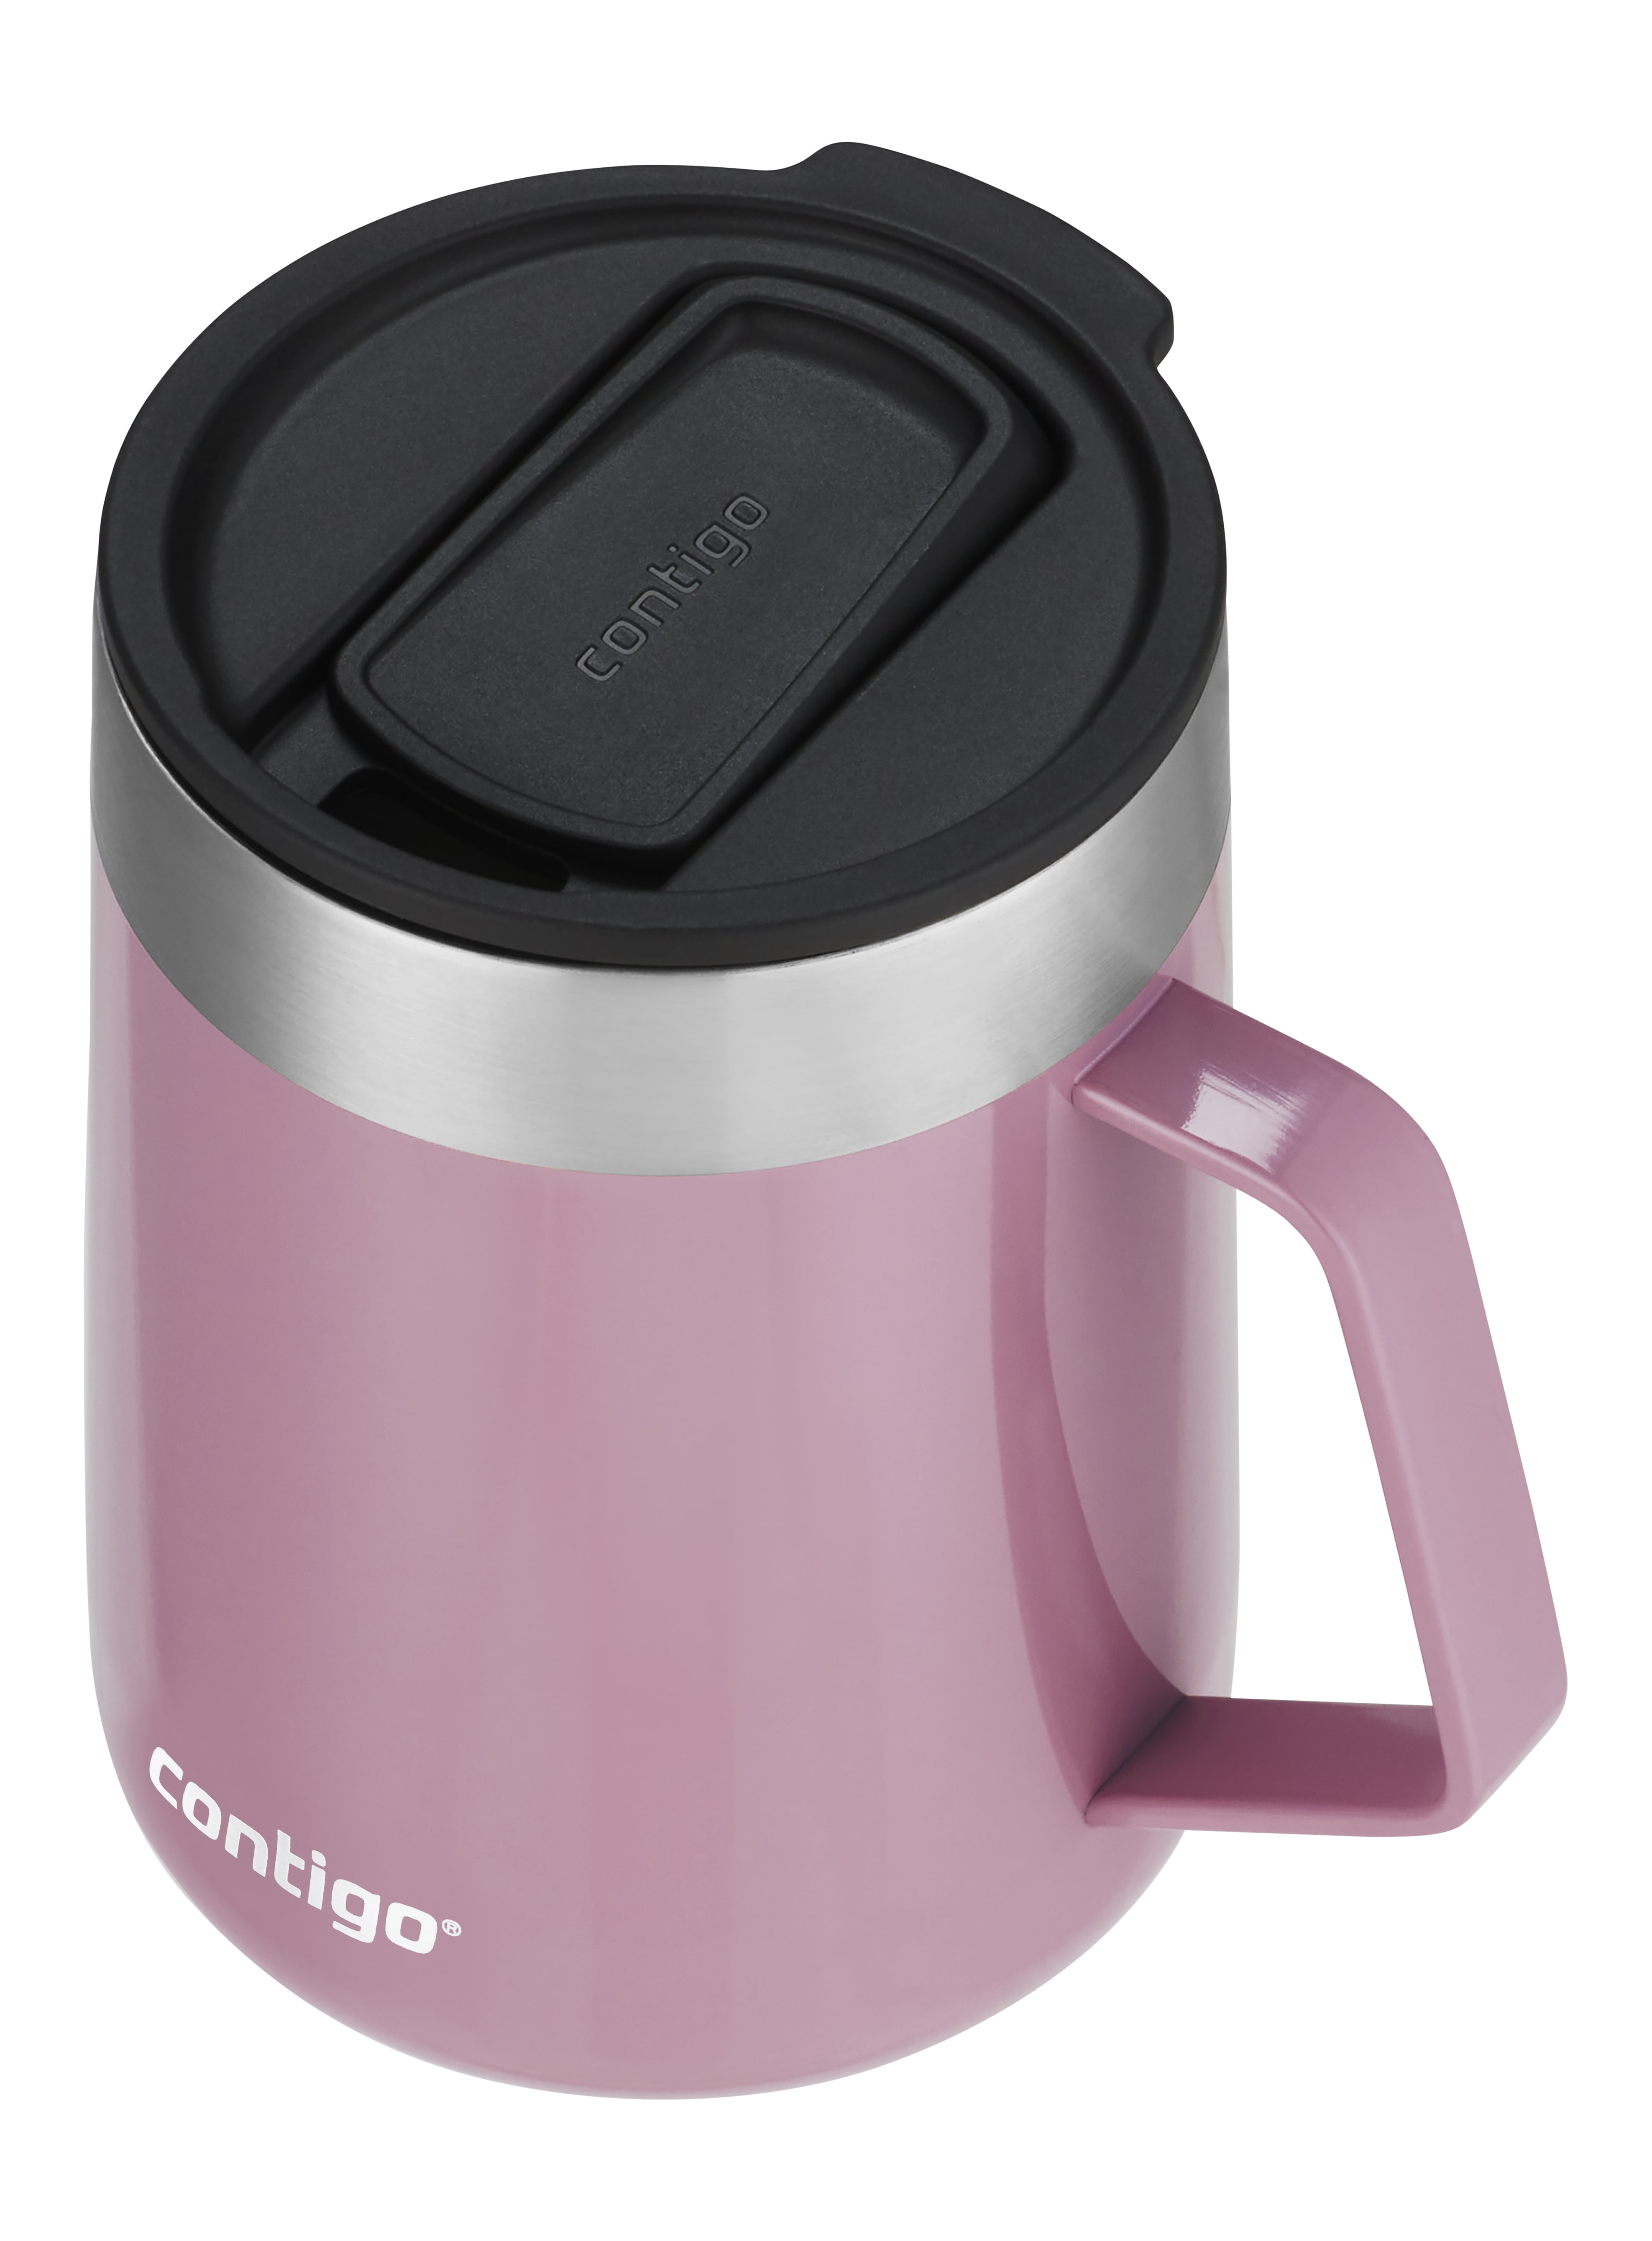 Custom Contigo® Streeterville Insulated Travel Mug 14oz 